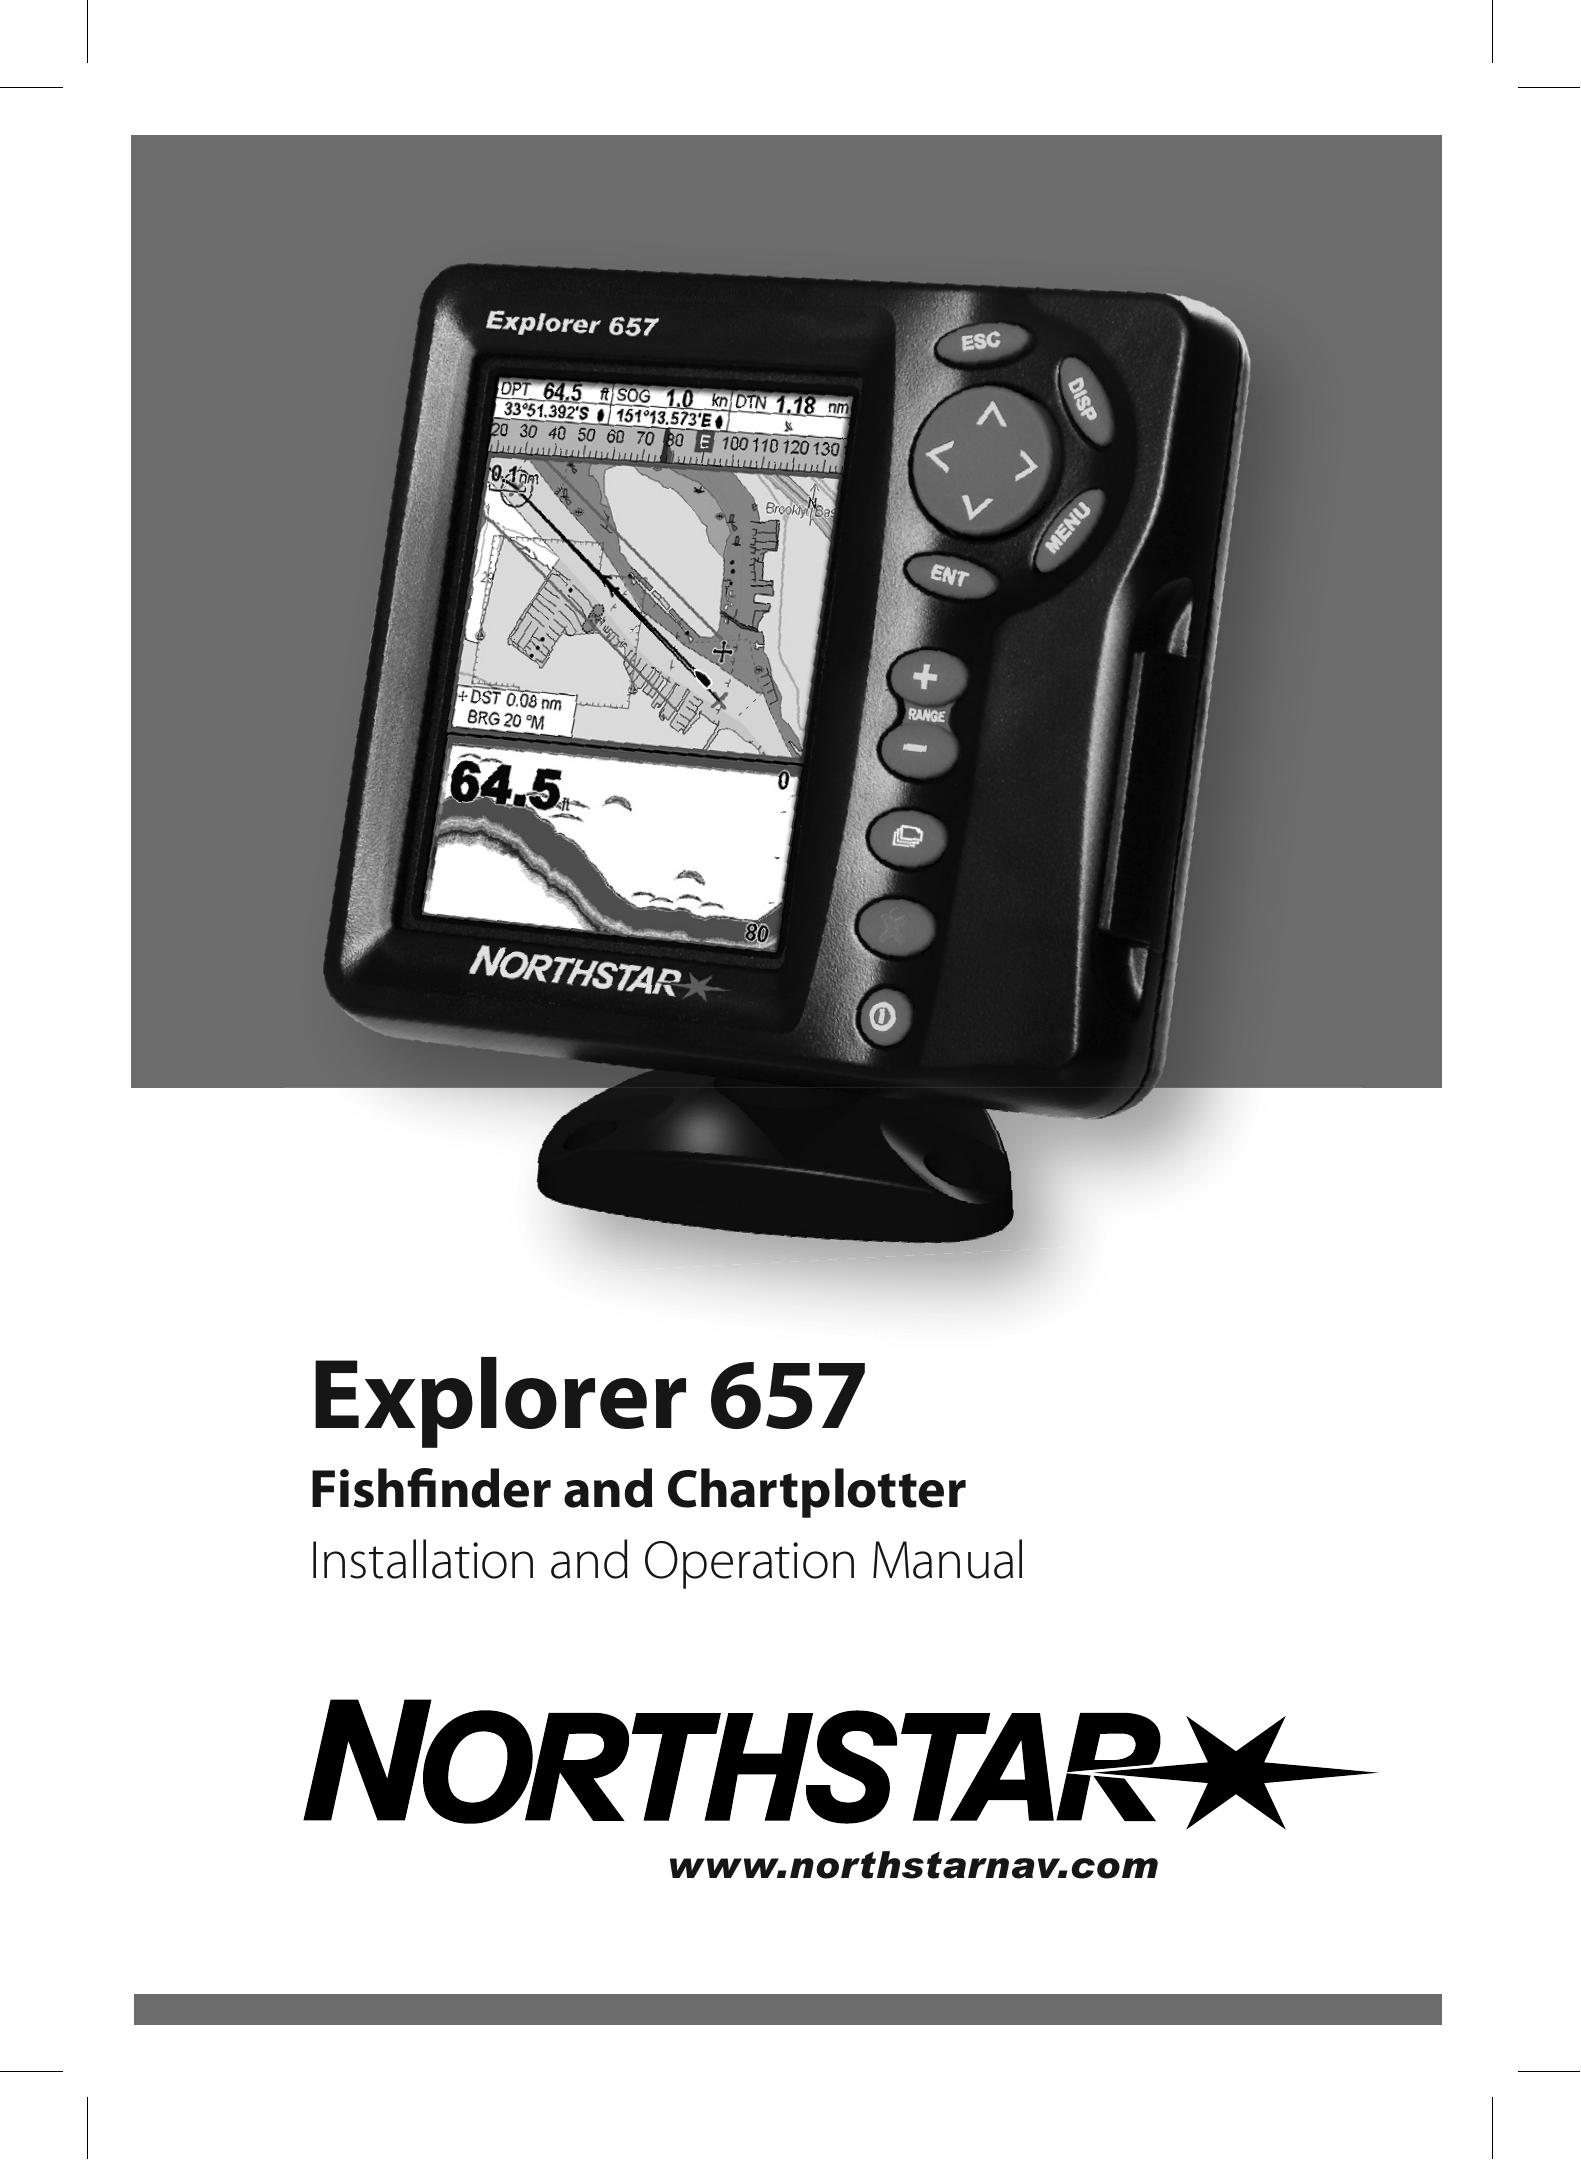 NorthStar Navigation EXPLORER 657 Fish Finder User Manual